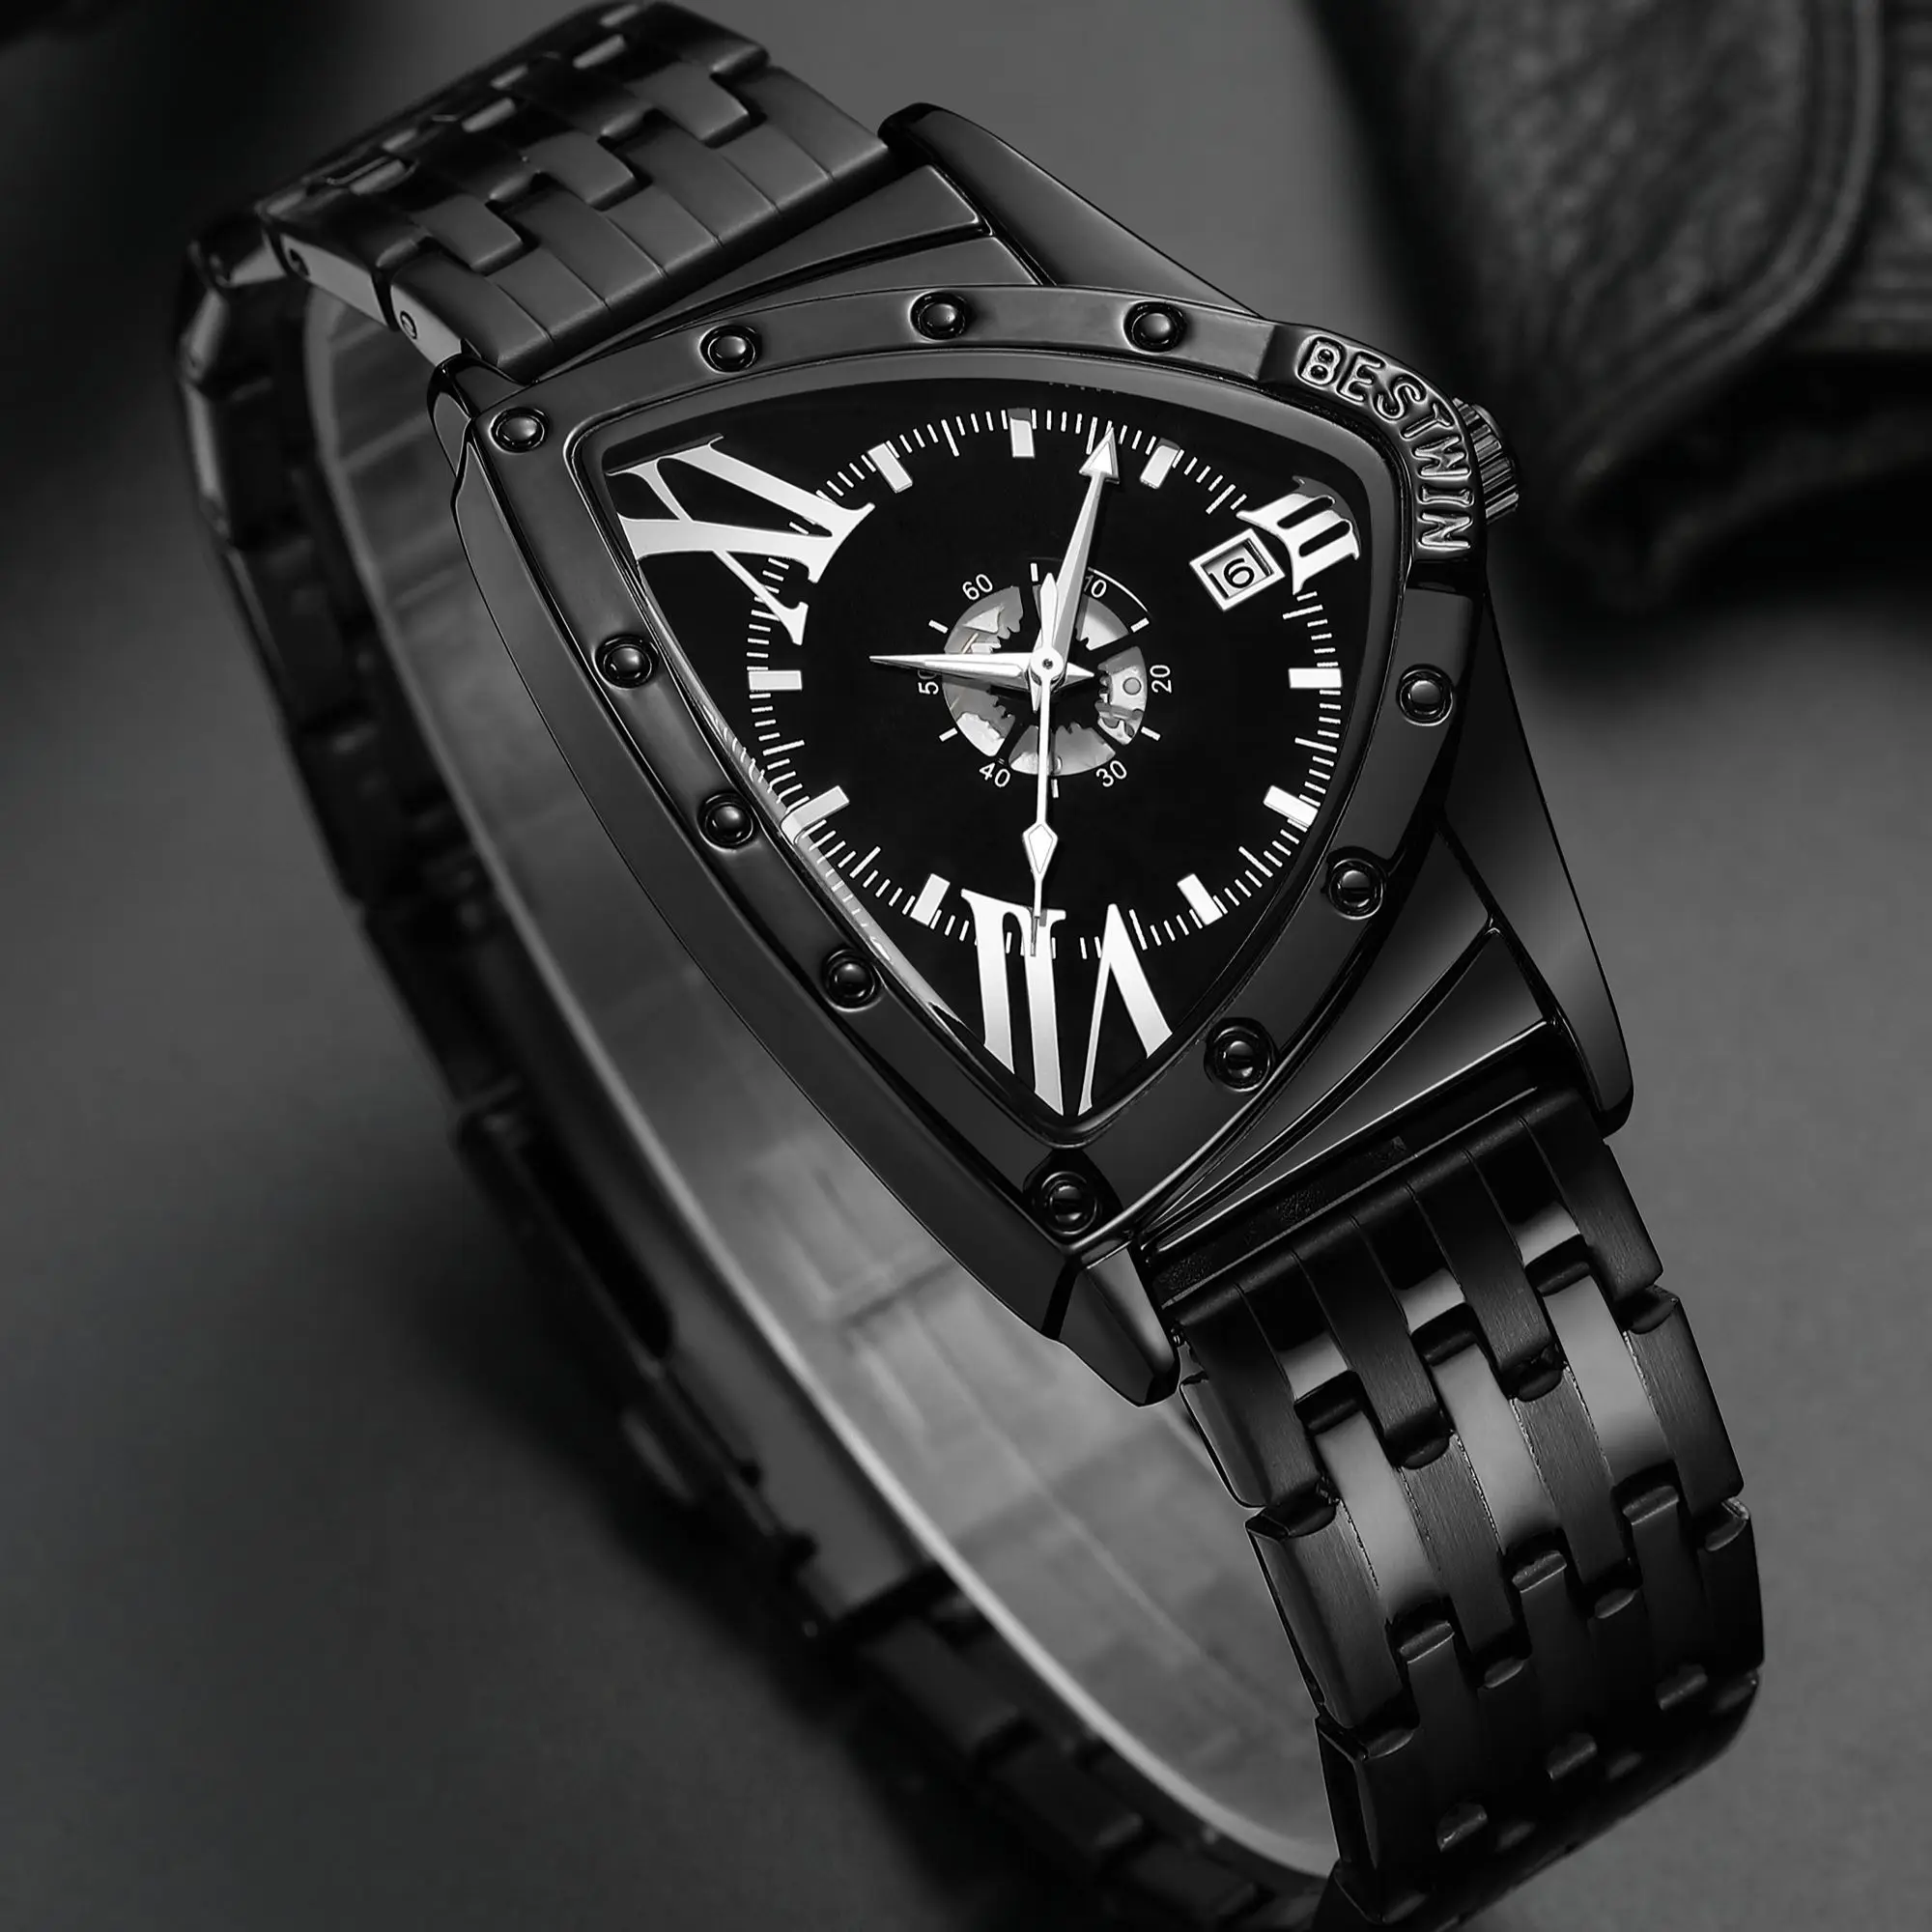 Bestwin Triangle Luxury Brand Trend Cool Men das Wrist Watch Stainless Steel Technology Fashion Quartz Watch Men Relogio Masculino